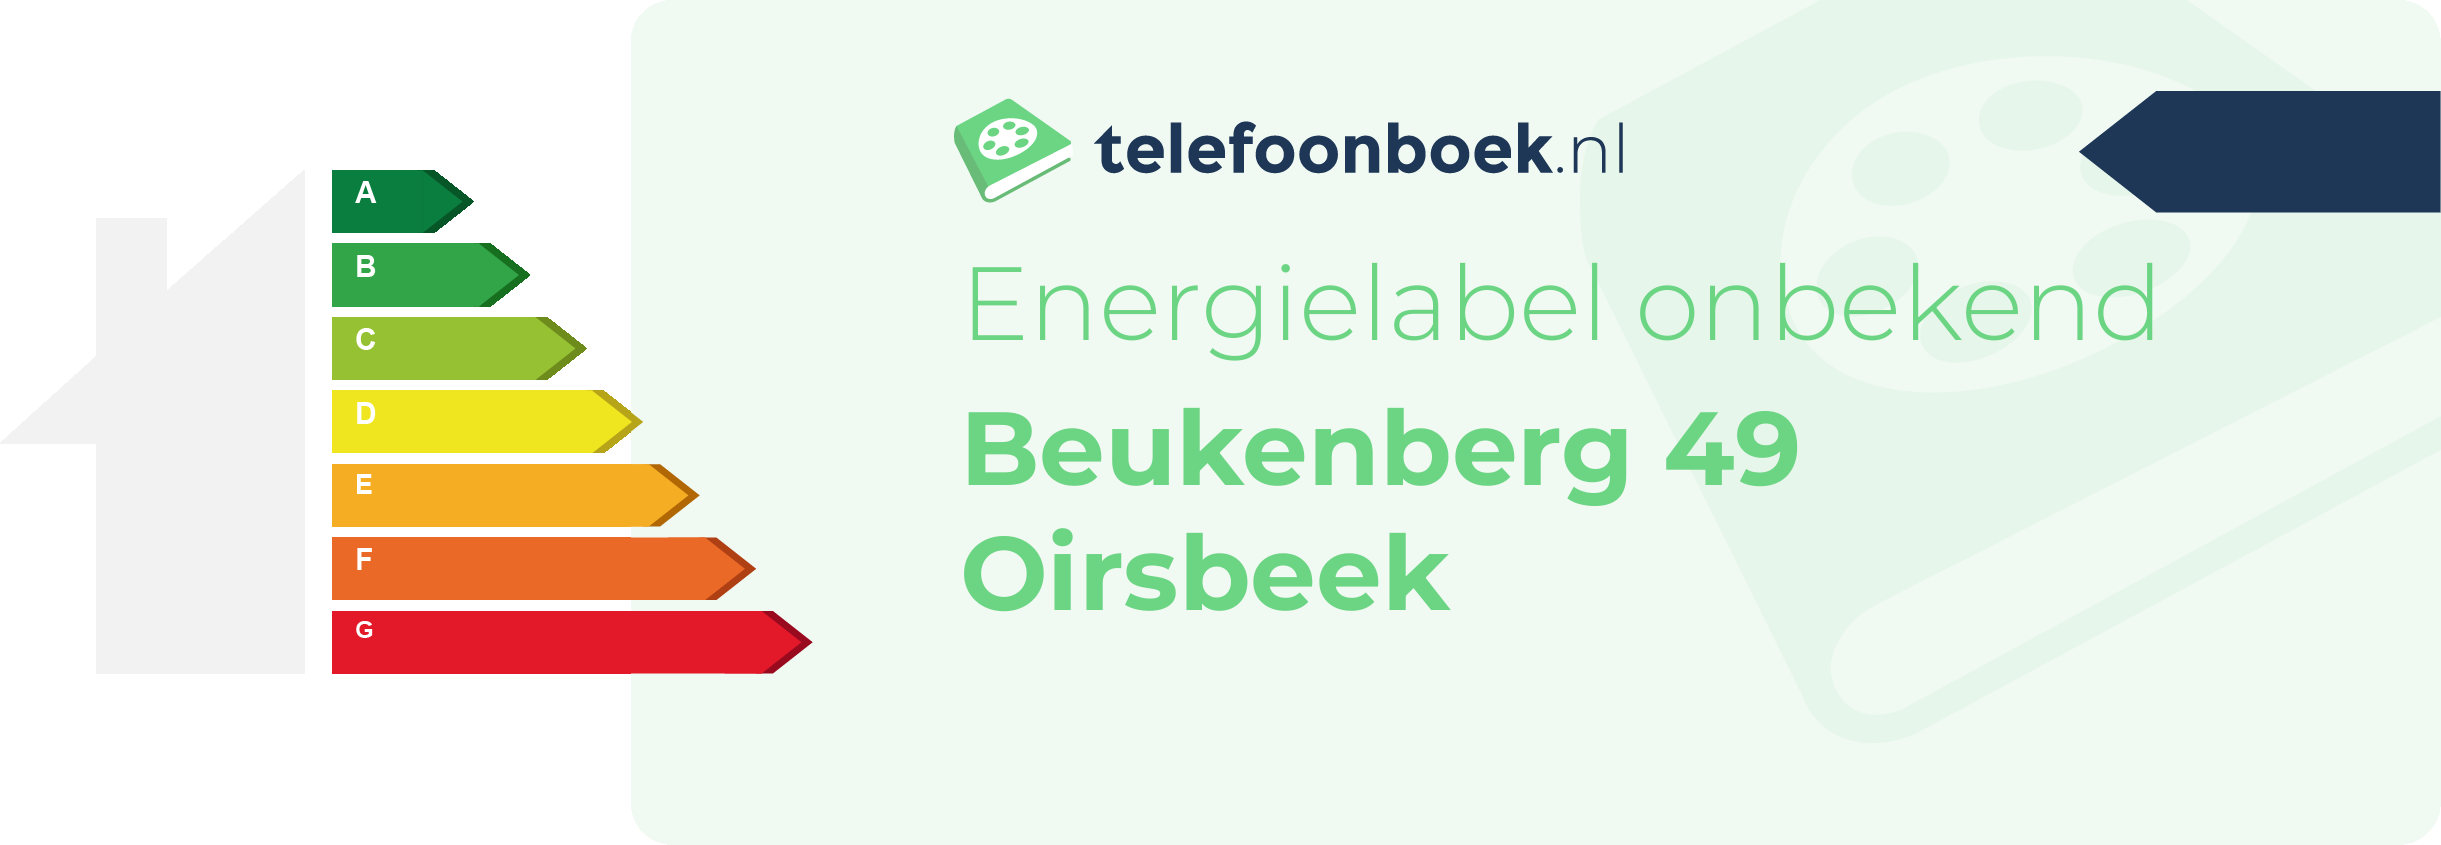 Energielabel Beukenberg 49 Oirsbeek